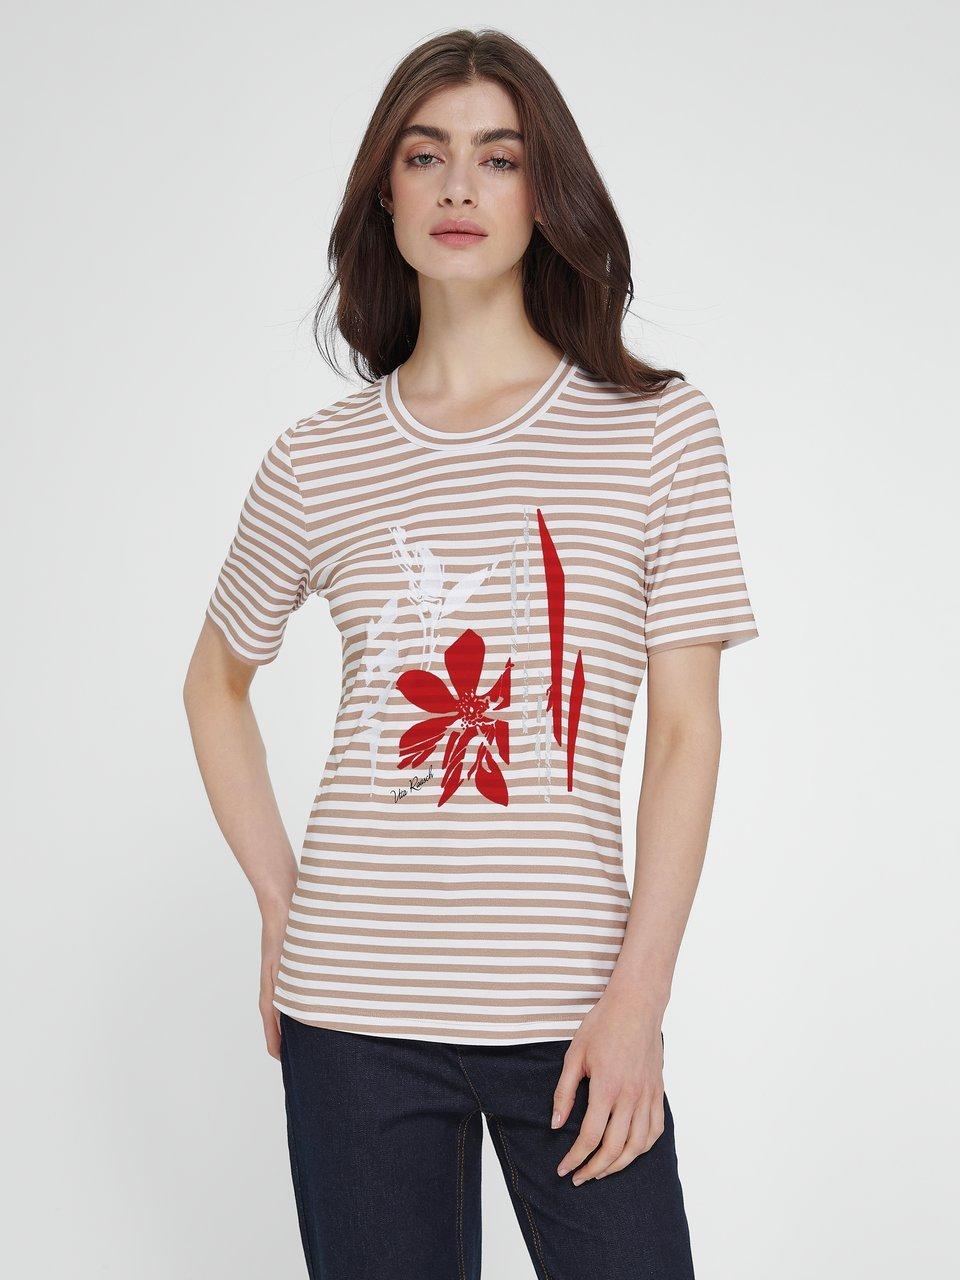 Uta Raasch - Le T-shirt manches courtes